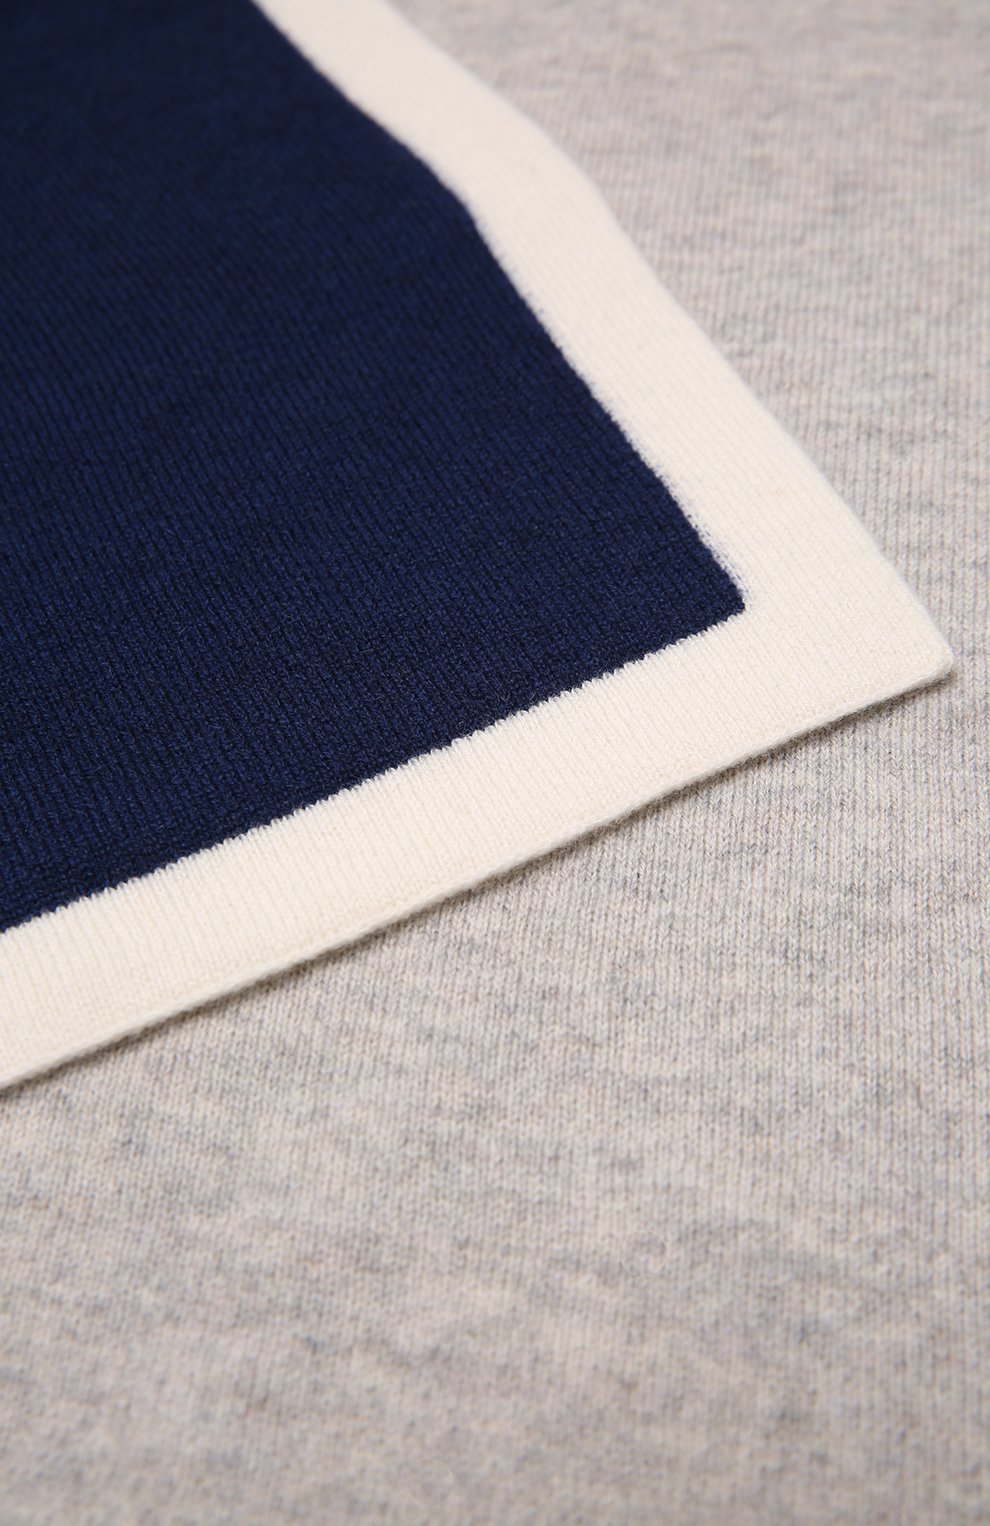 Детского кашемировое одеяло BABY T темно-синего цвета, арт. 21AIC822C0 | Фото 2 (Материал: Текстиль, Кашемир, Шерсть)